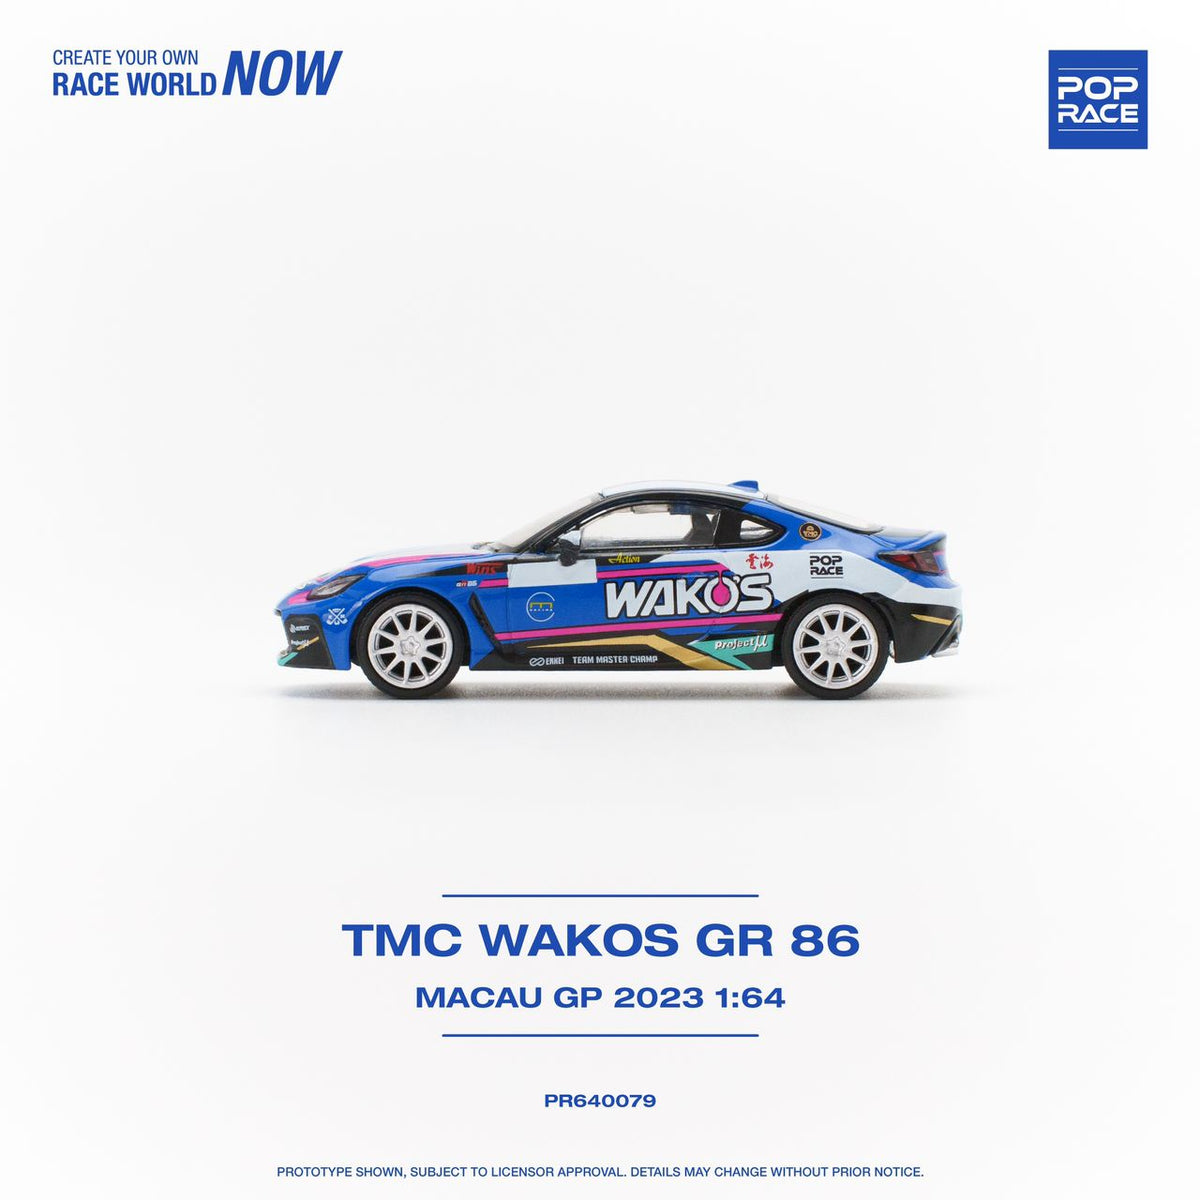 PREORDER POPRACE 1/64 Toyota GR86 - TMC Wakos Macau GP 